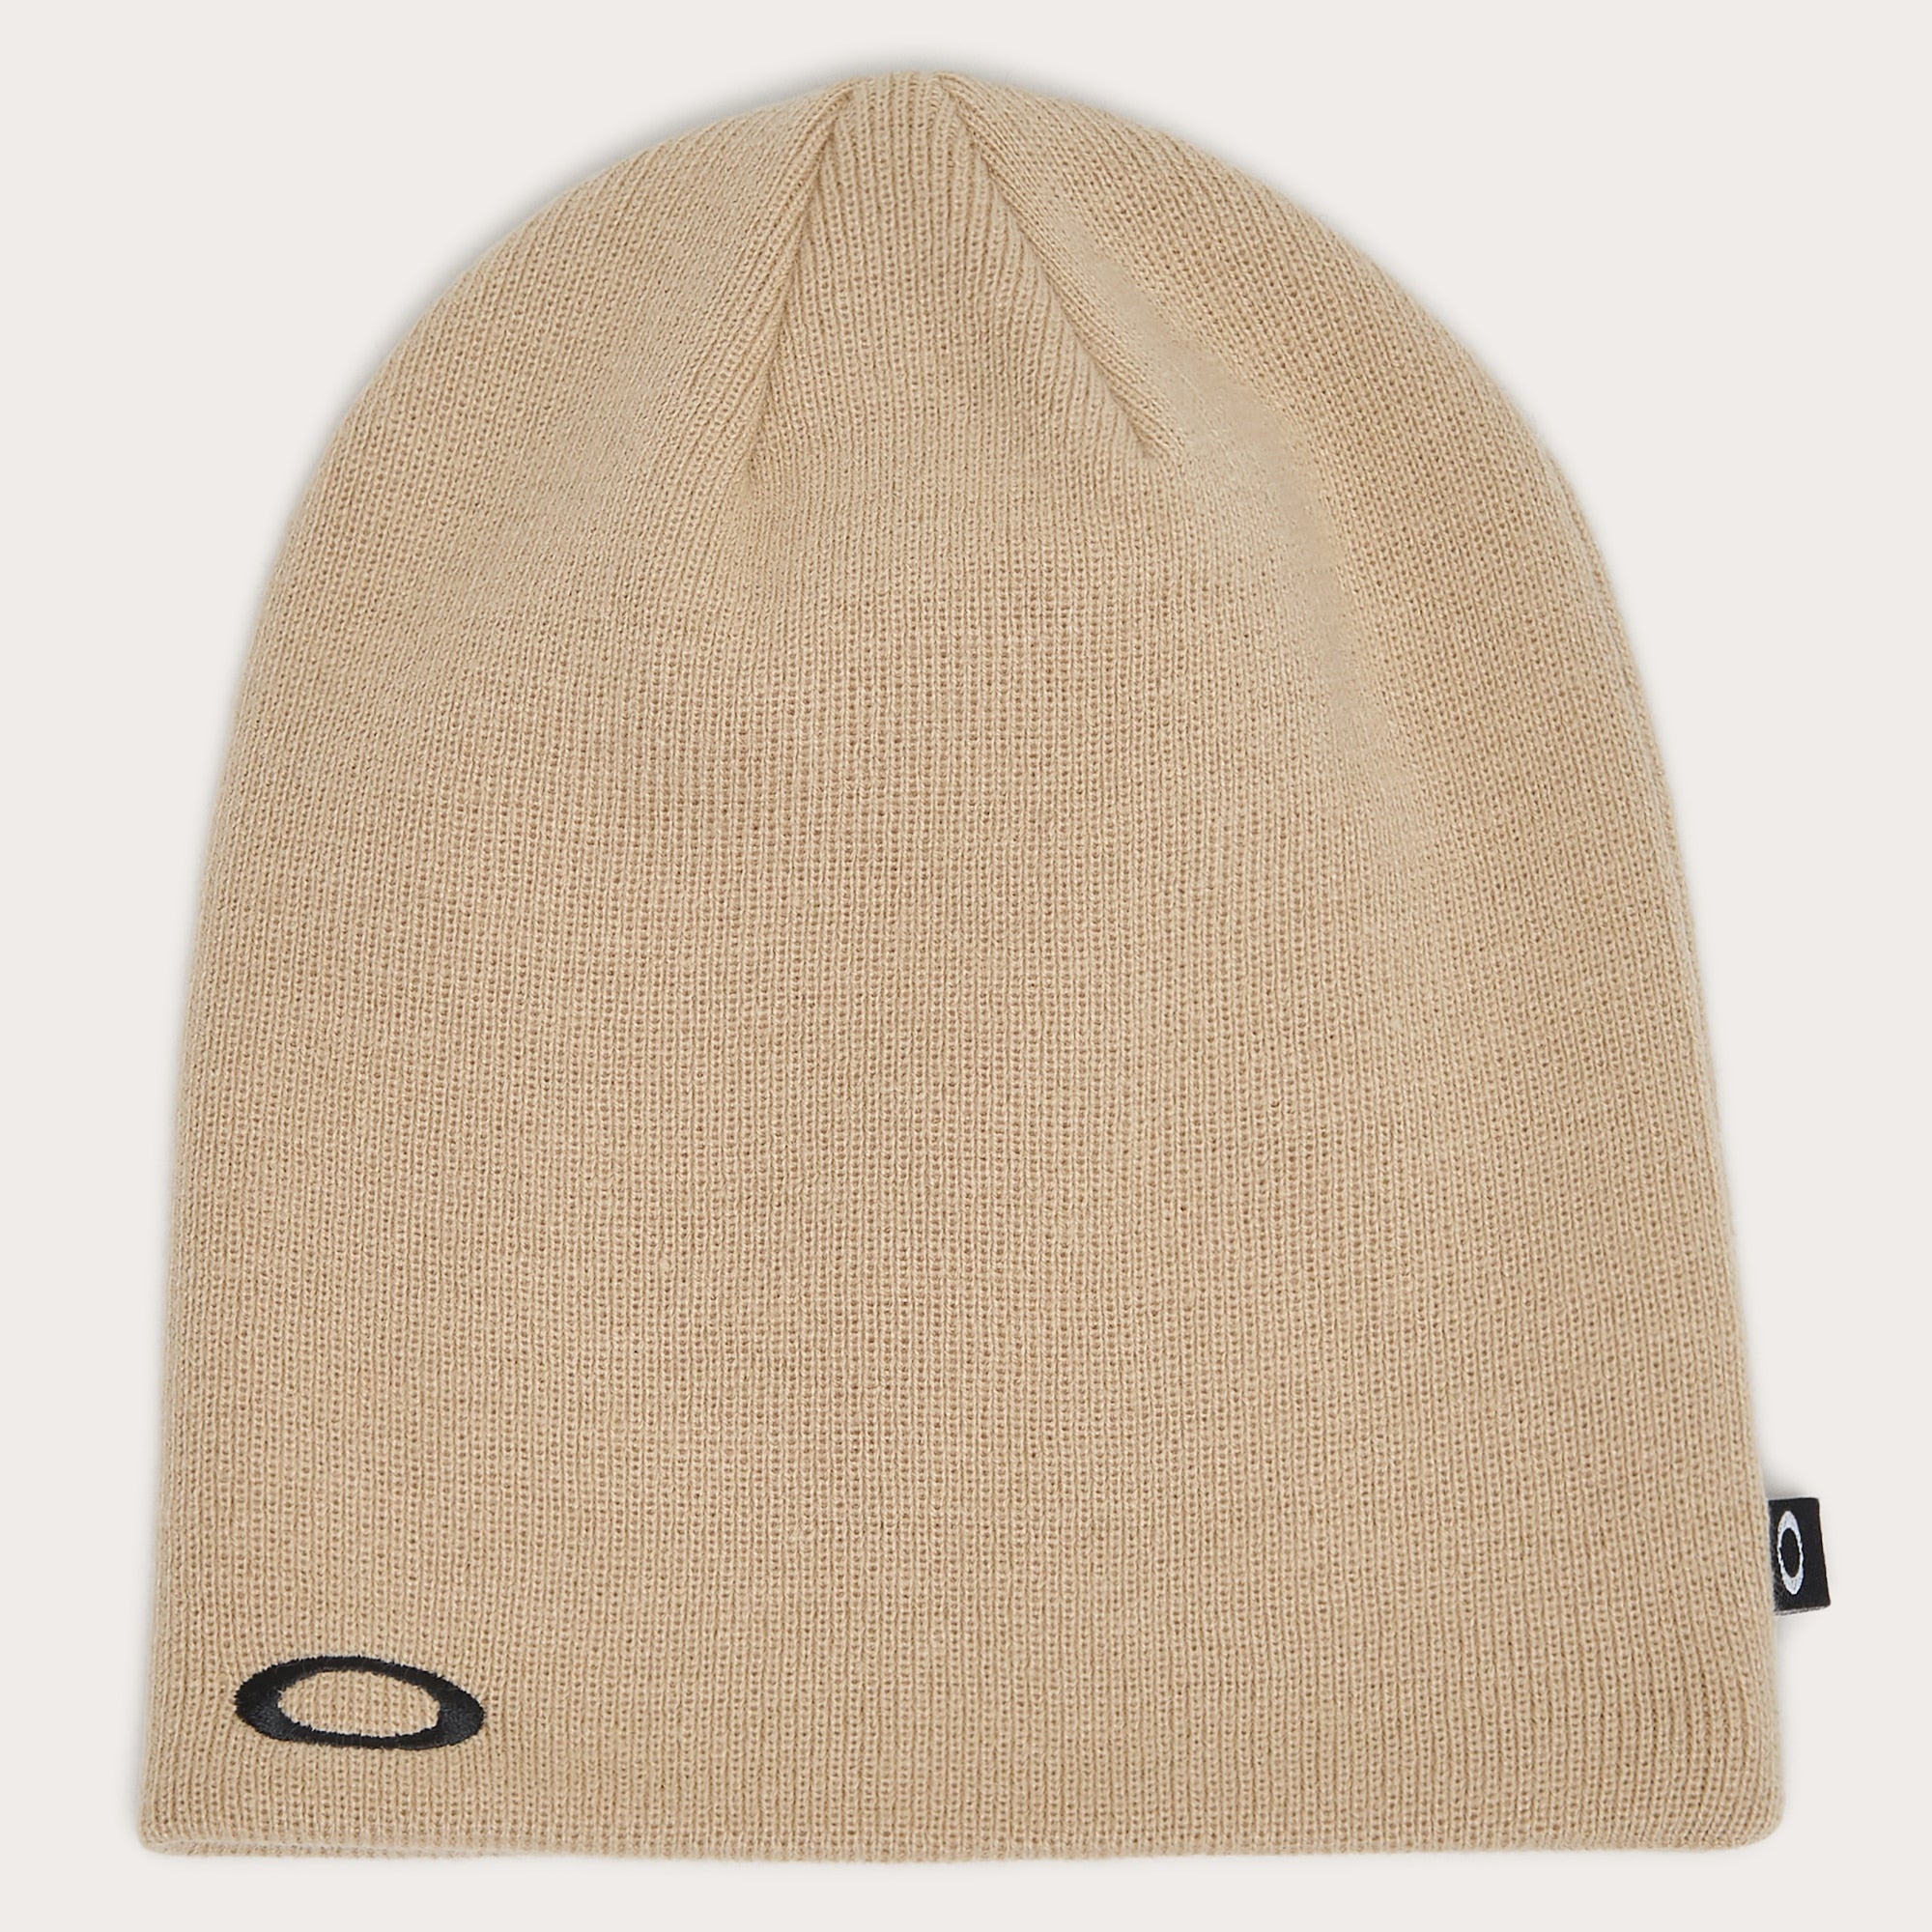 Oakley FINE Knit hat